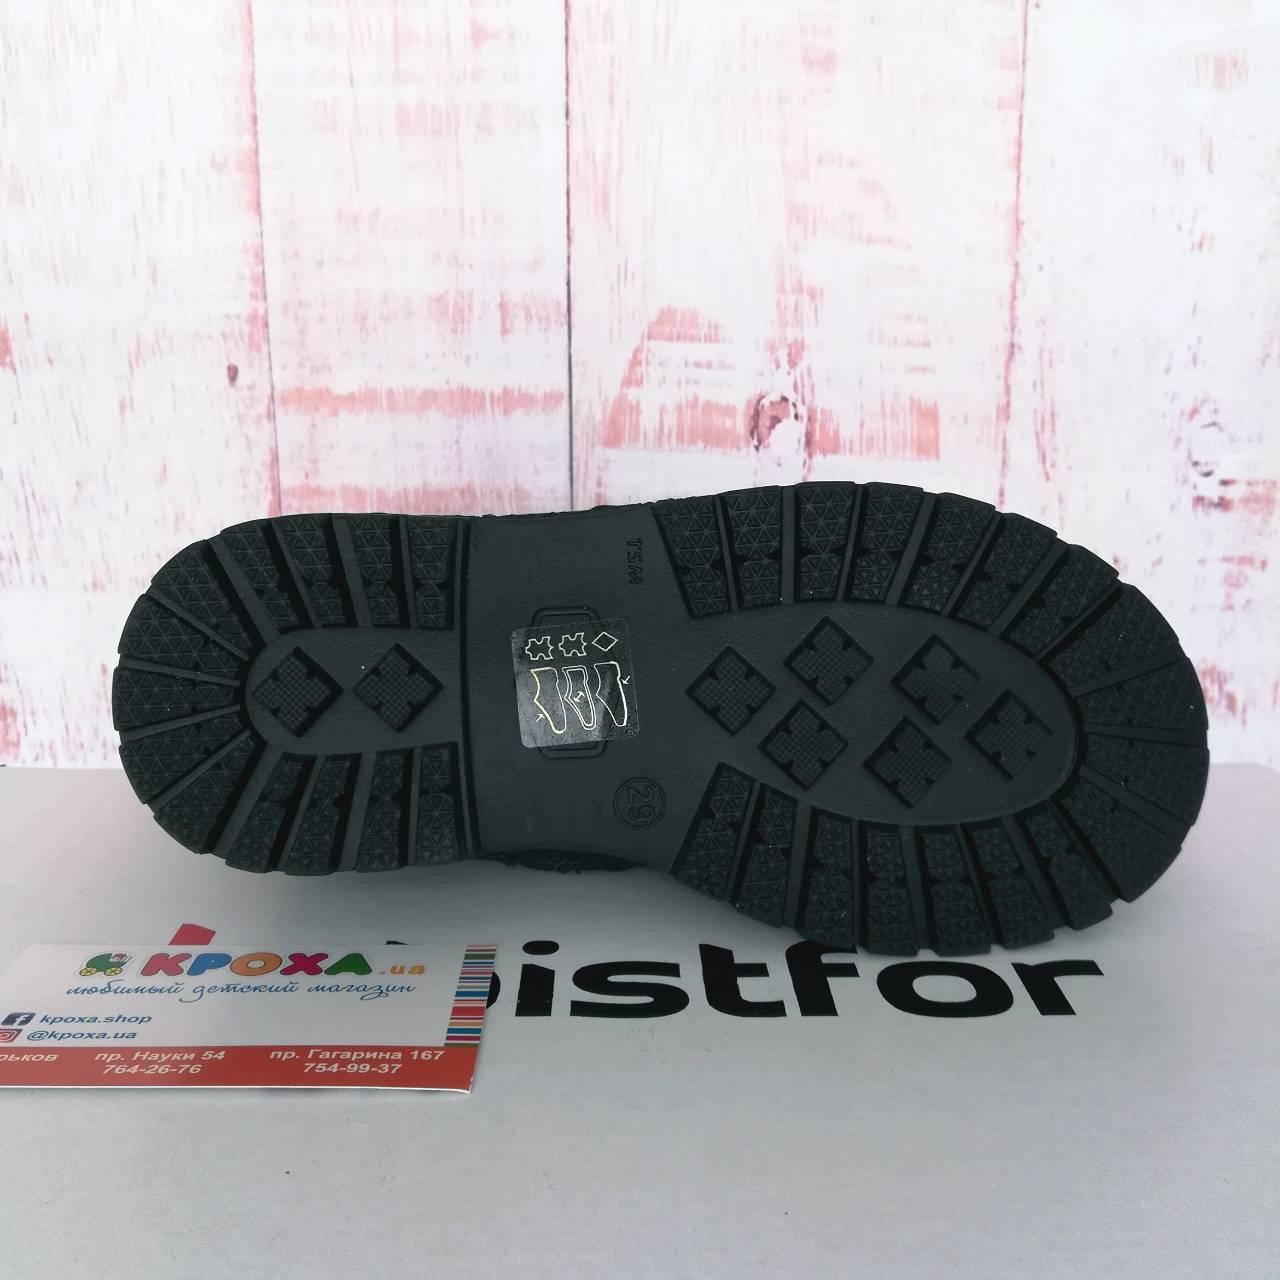 Зимові дитячі чоботи для дівчинки 29 розміру  (60515/205), Bistfor